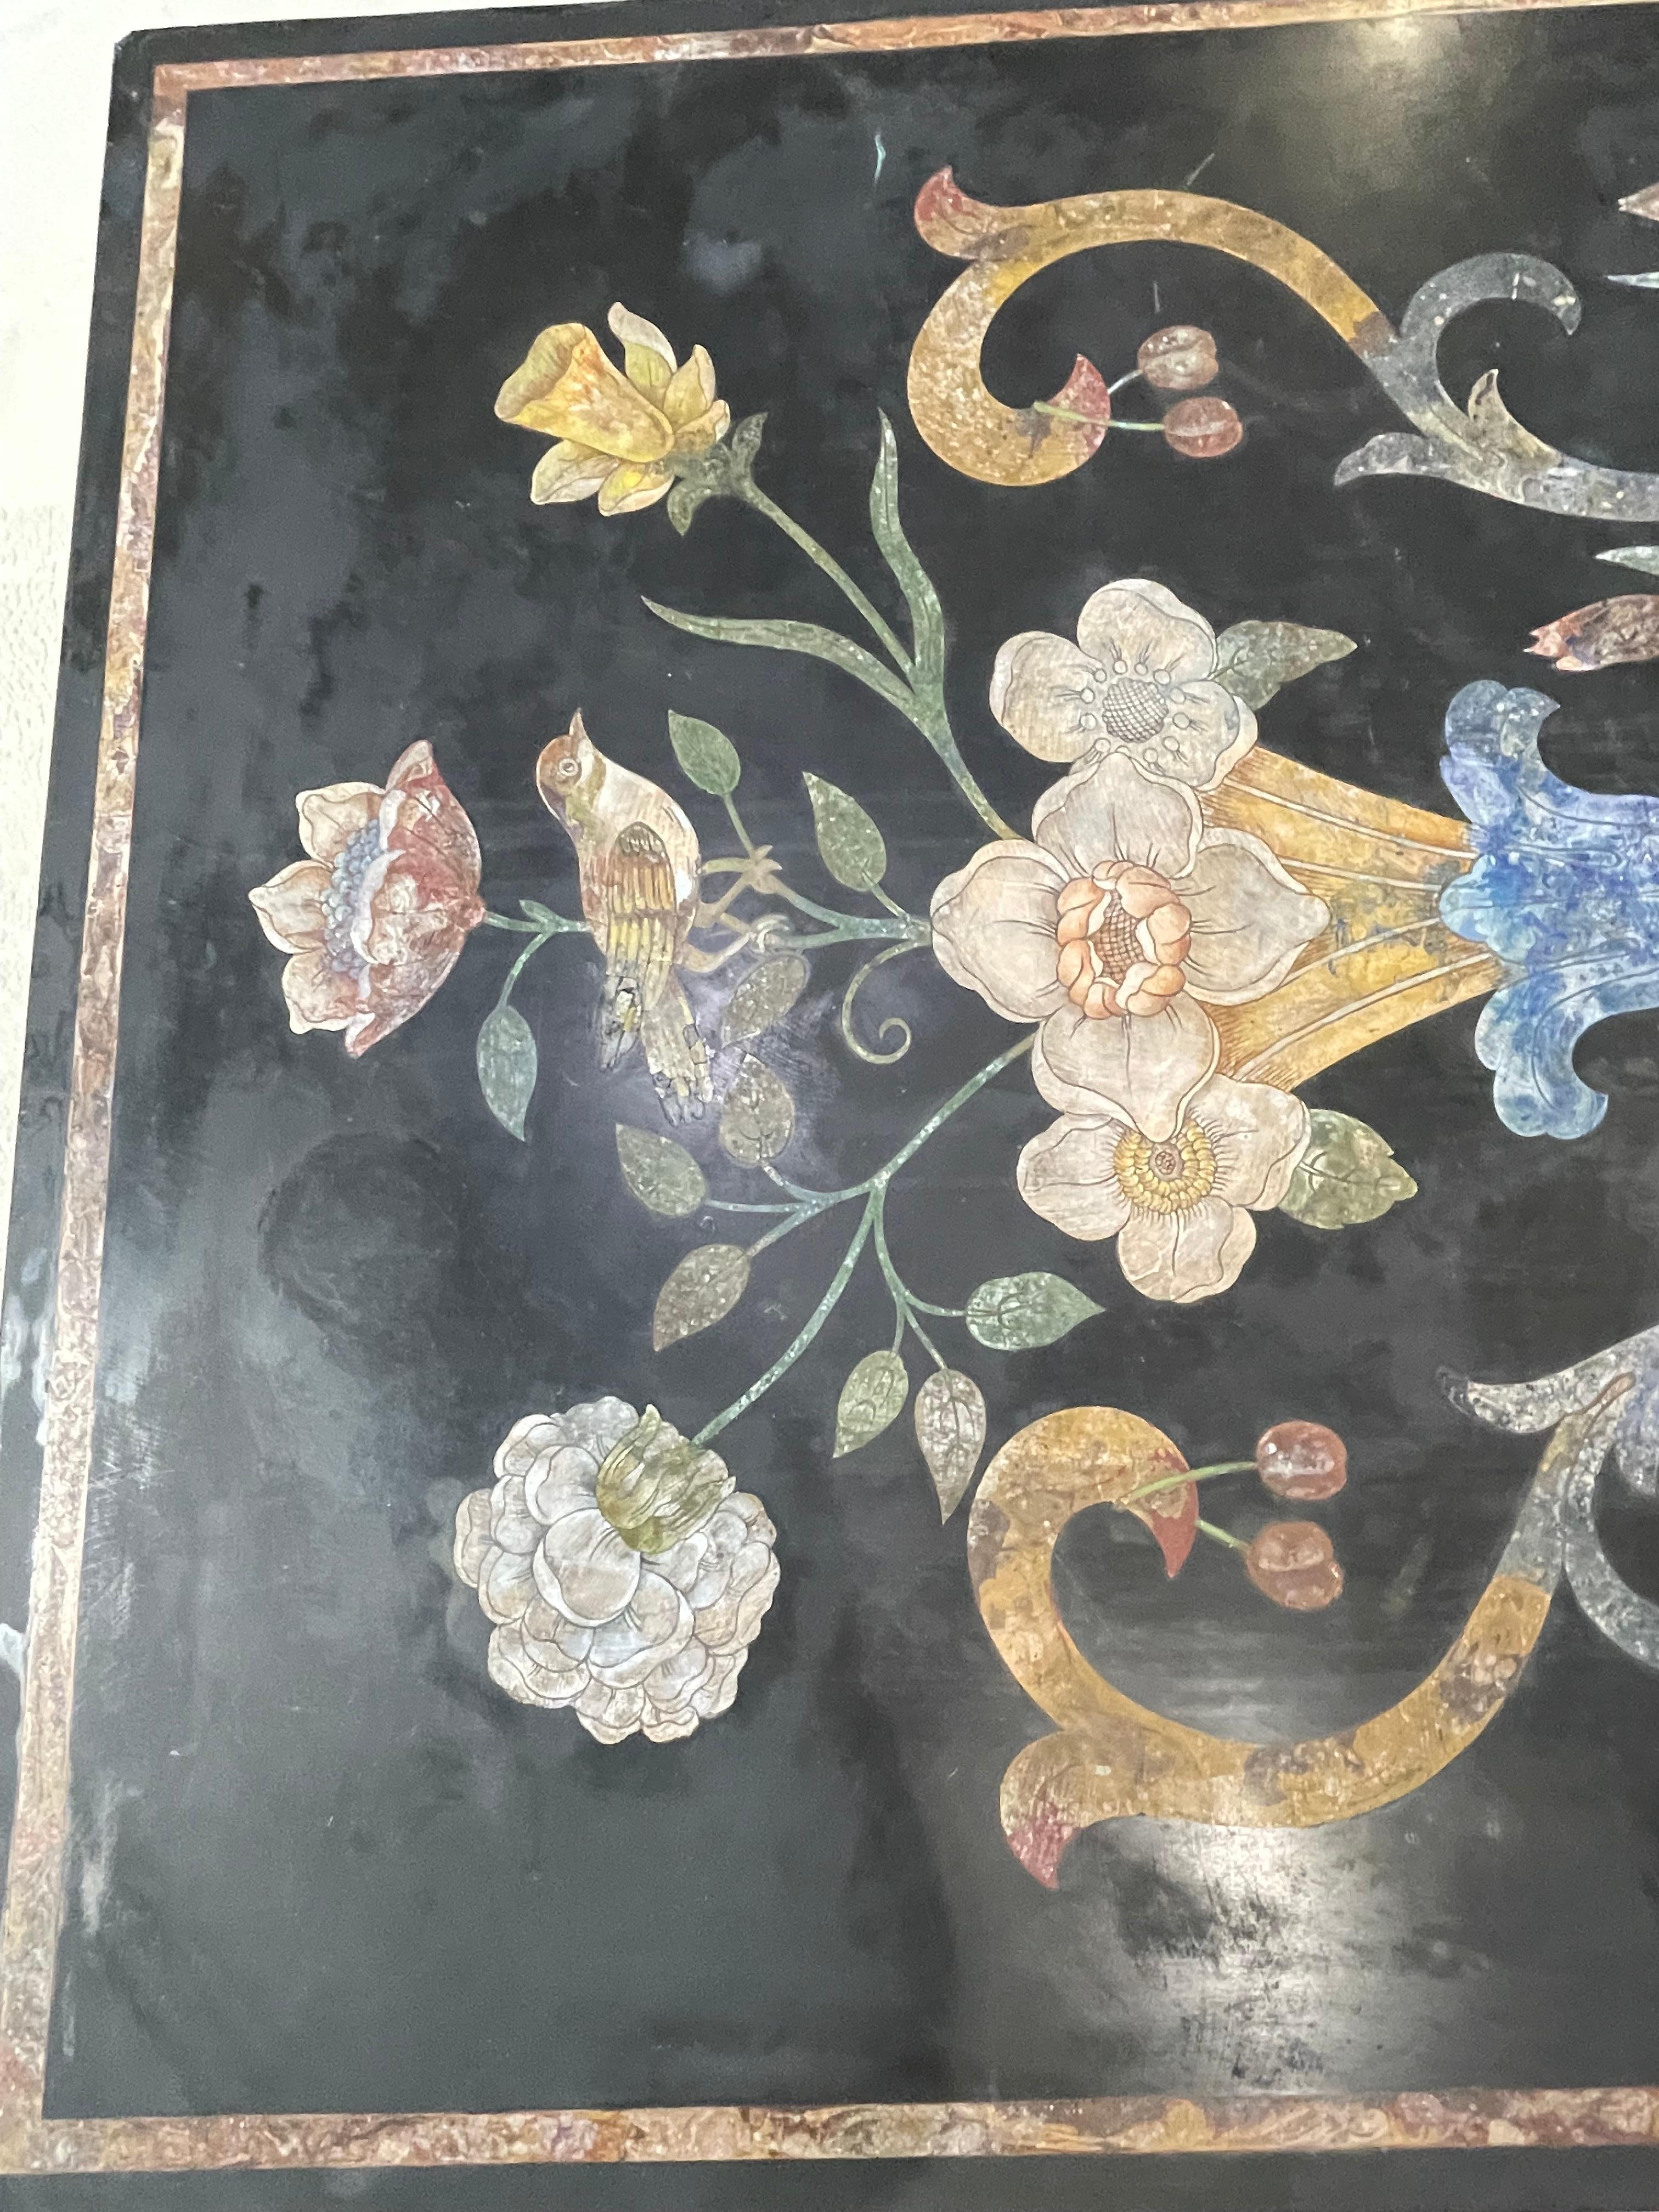 Table scagiola italienne polychrome représentant des fleurs, des feuillages, des cerises, des oiseaux et des ronces. Les couleurs sont une dégradation du jaune ocre, quelques notes de bleu et de rose agrémentent le tableau. Cette table scagiola